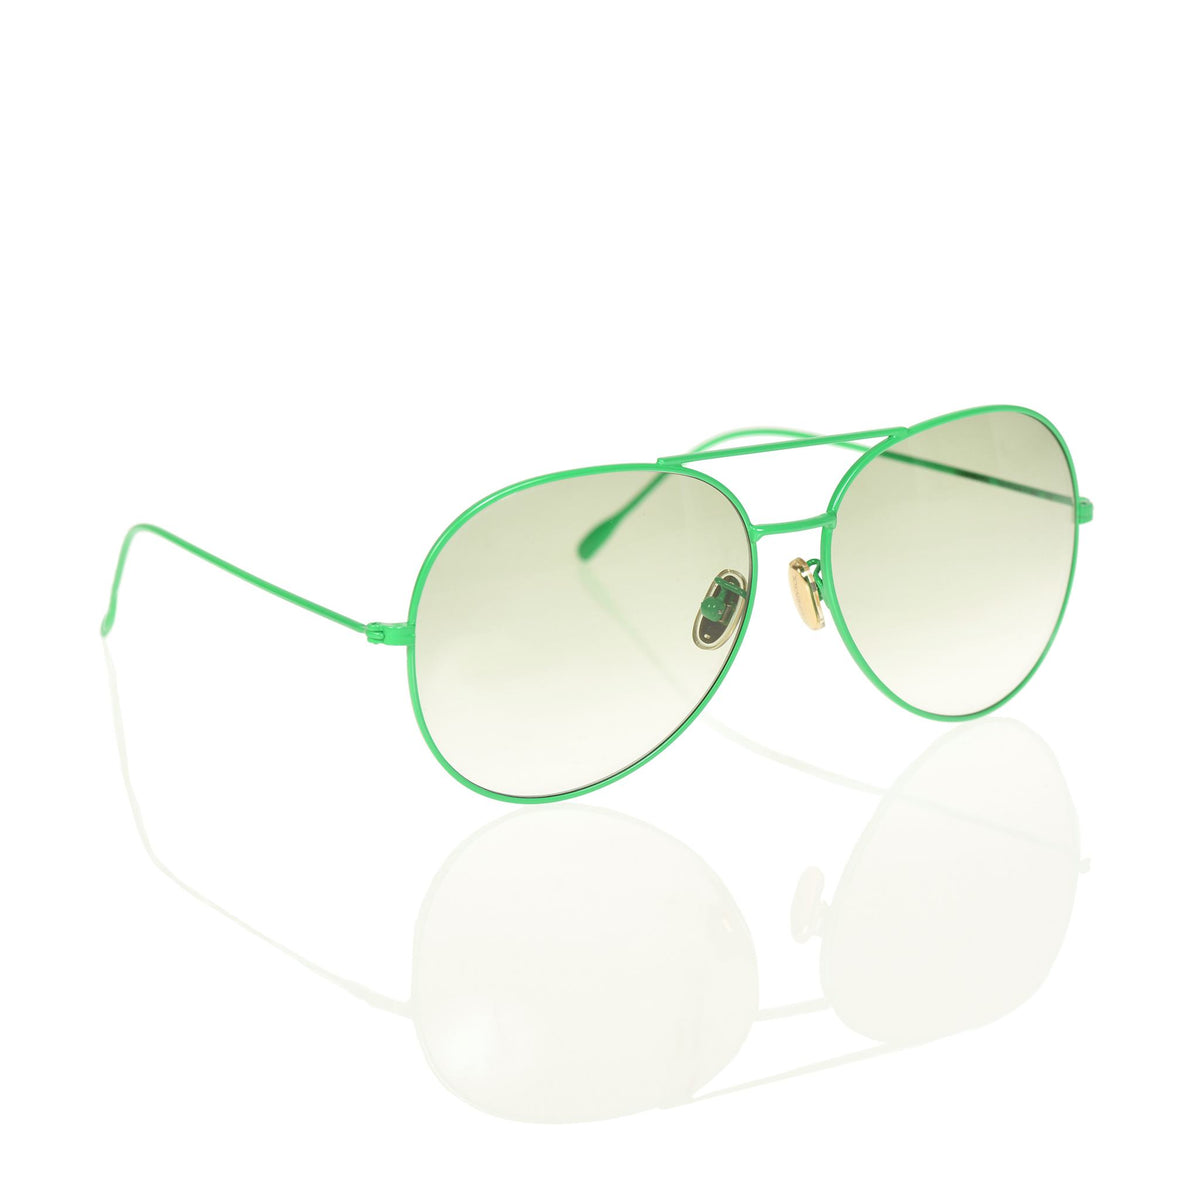 Green aviator sunglasses for women